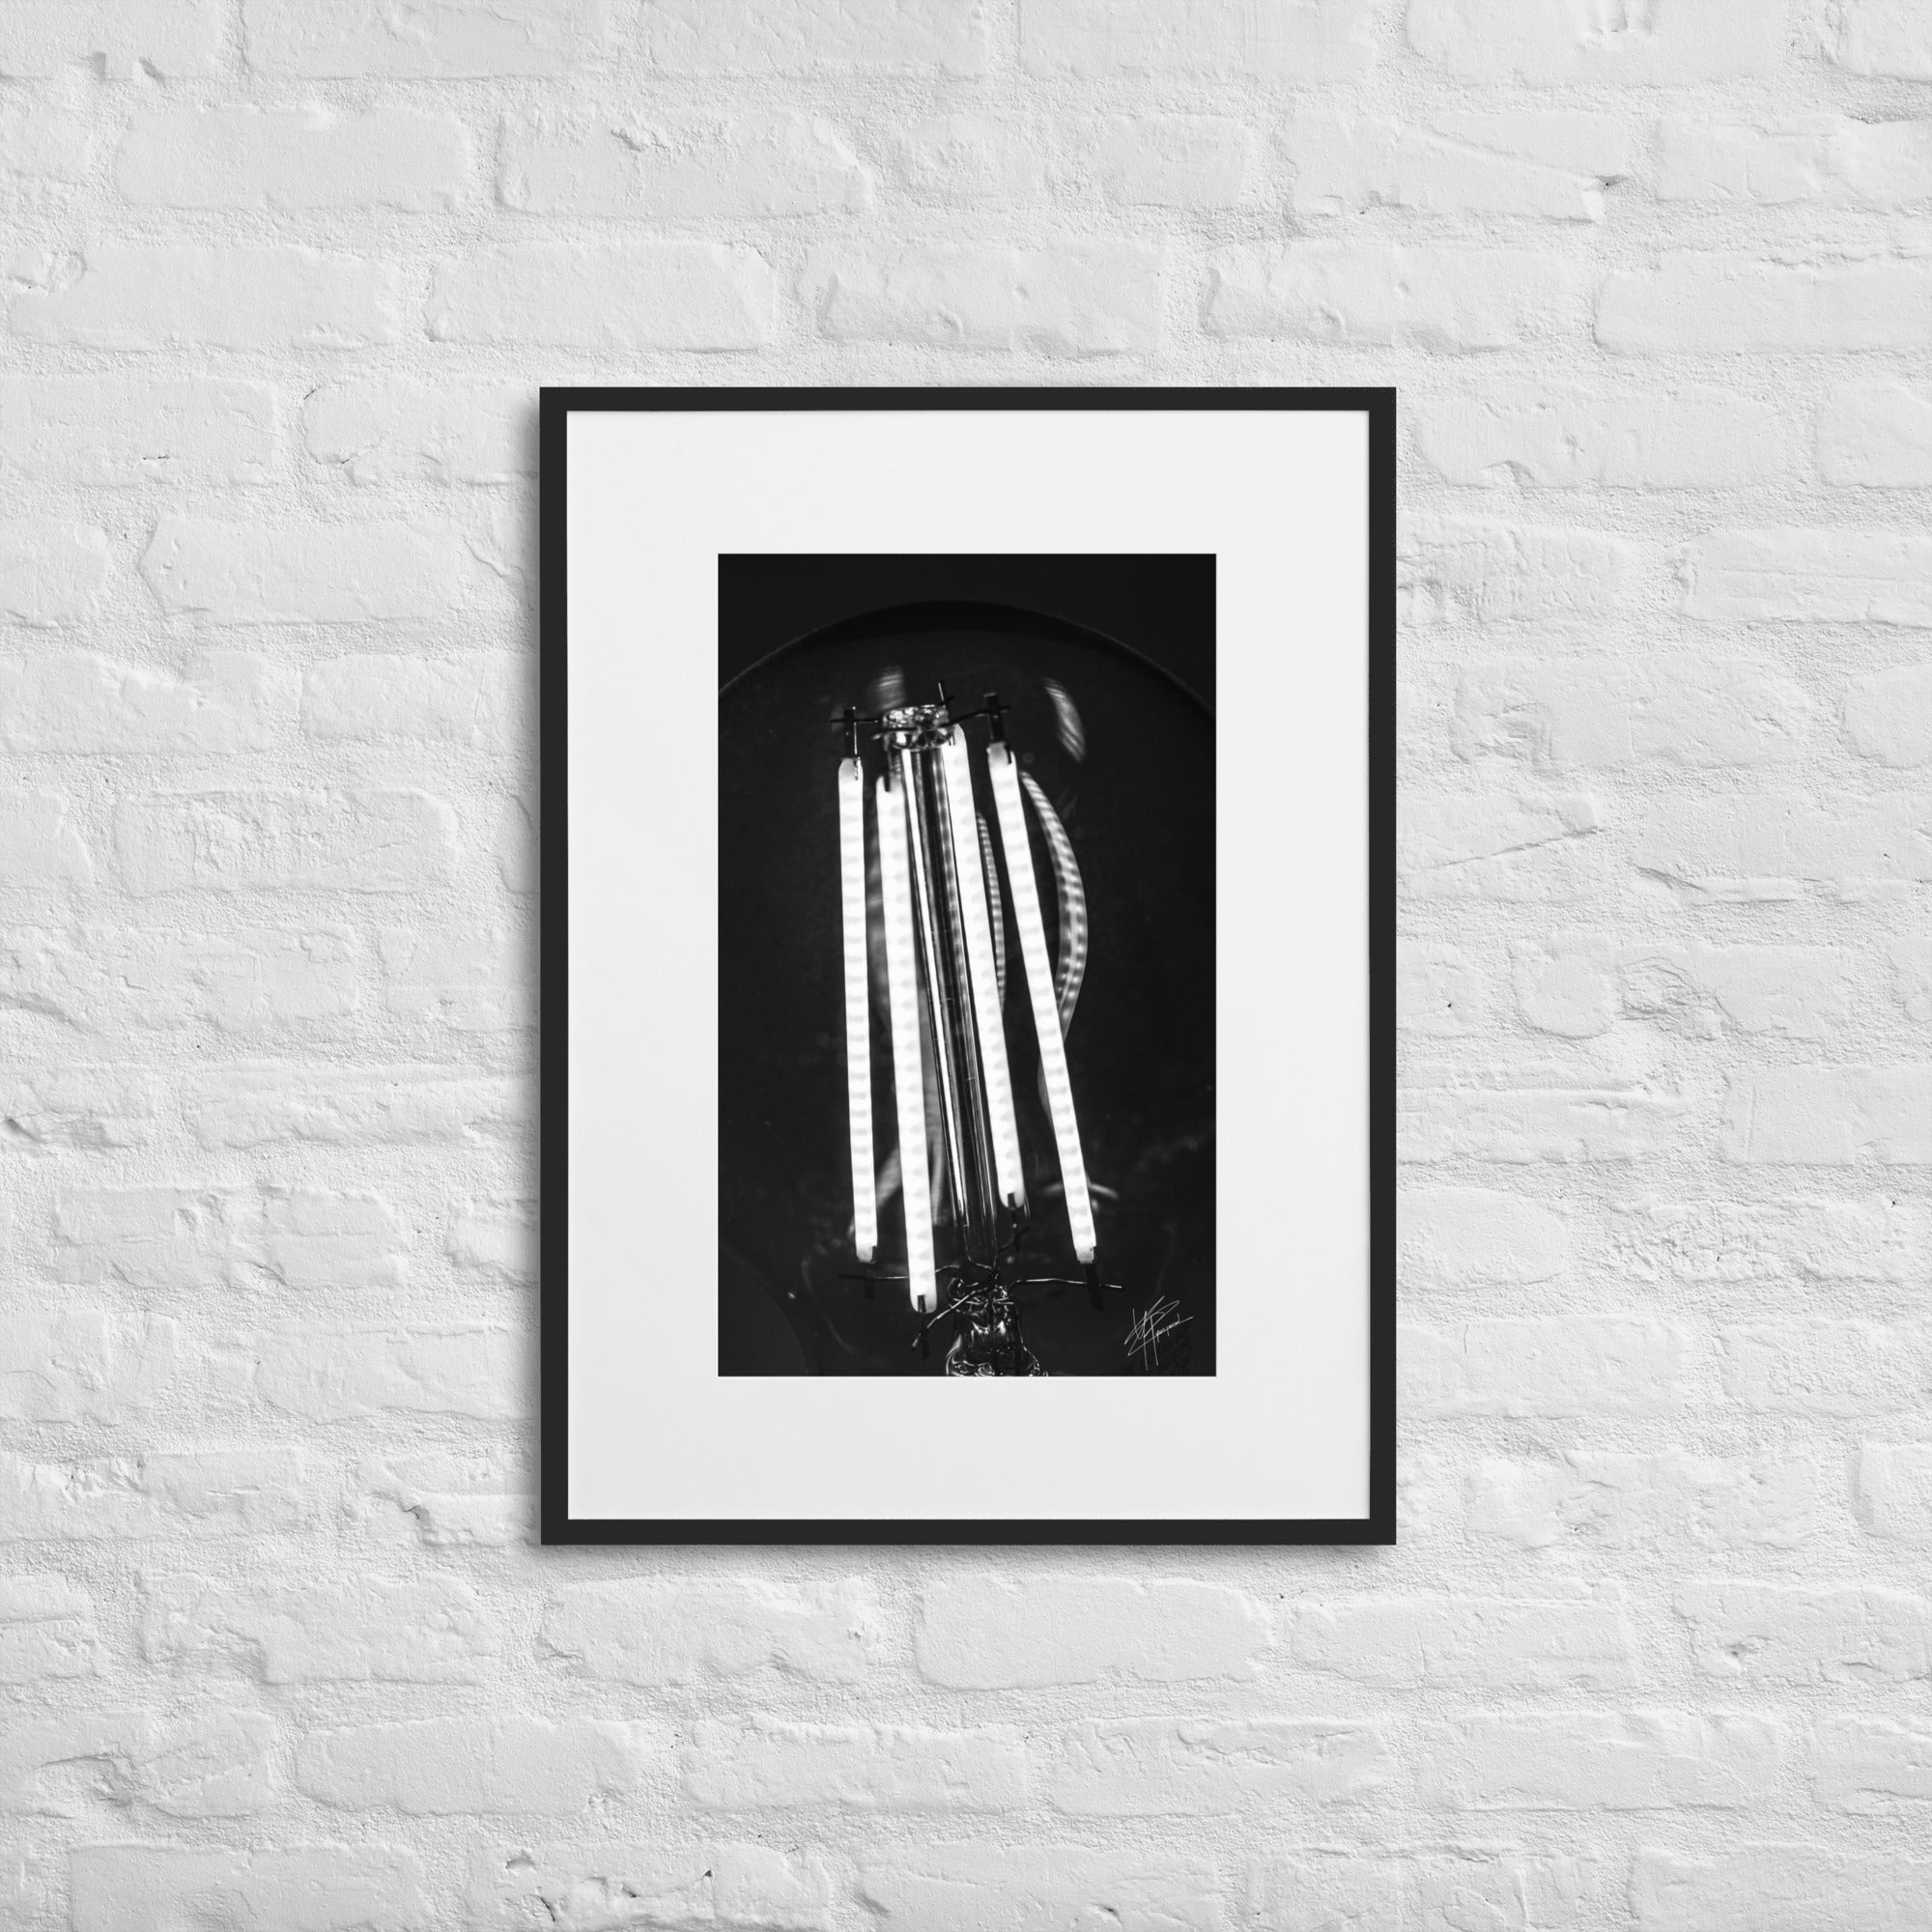 Photographie en gros plan d'une ampoule allumée en noir et blanc, où les filaments brillent de manière éclatante sur un fond sombre, encapsulant la beauté dans la simplicité.